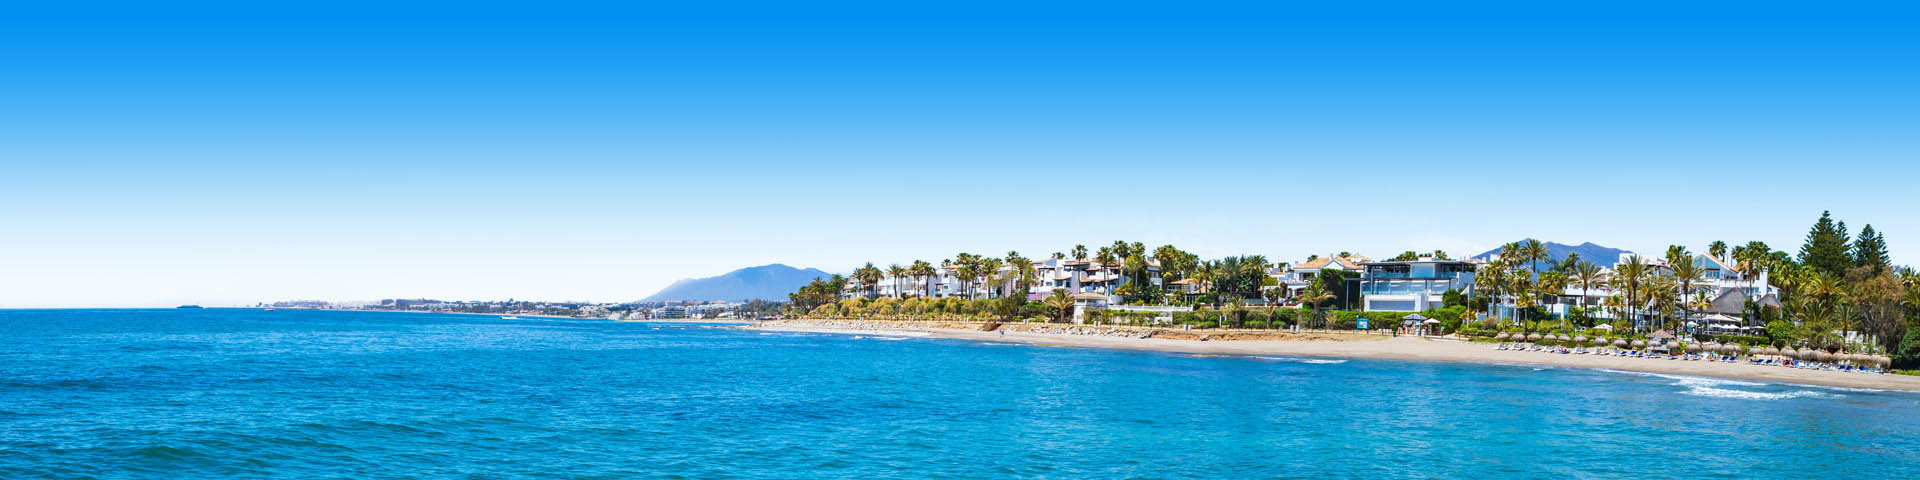 Alle last minute vakanties naar Costa del Sol bij Prijsvrij Vakanties